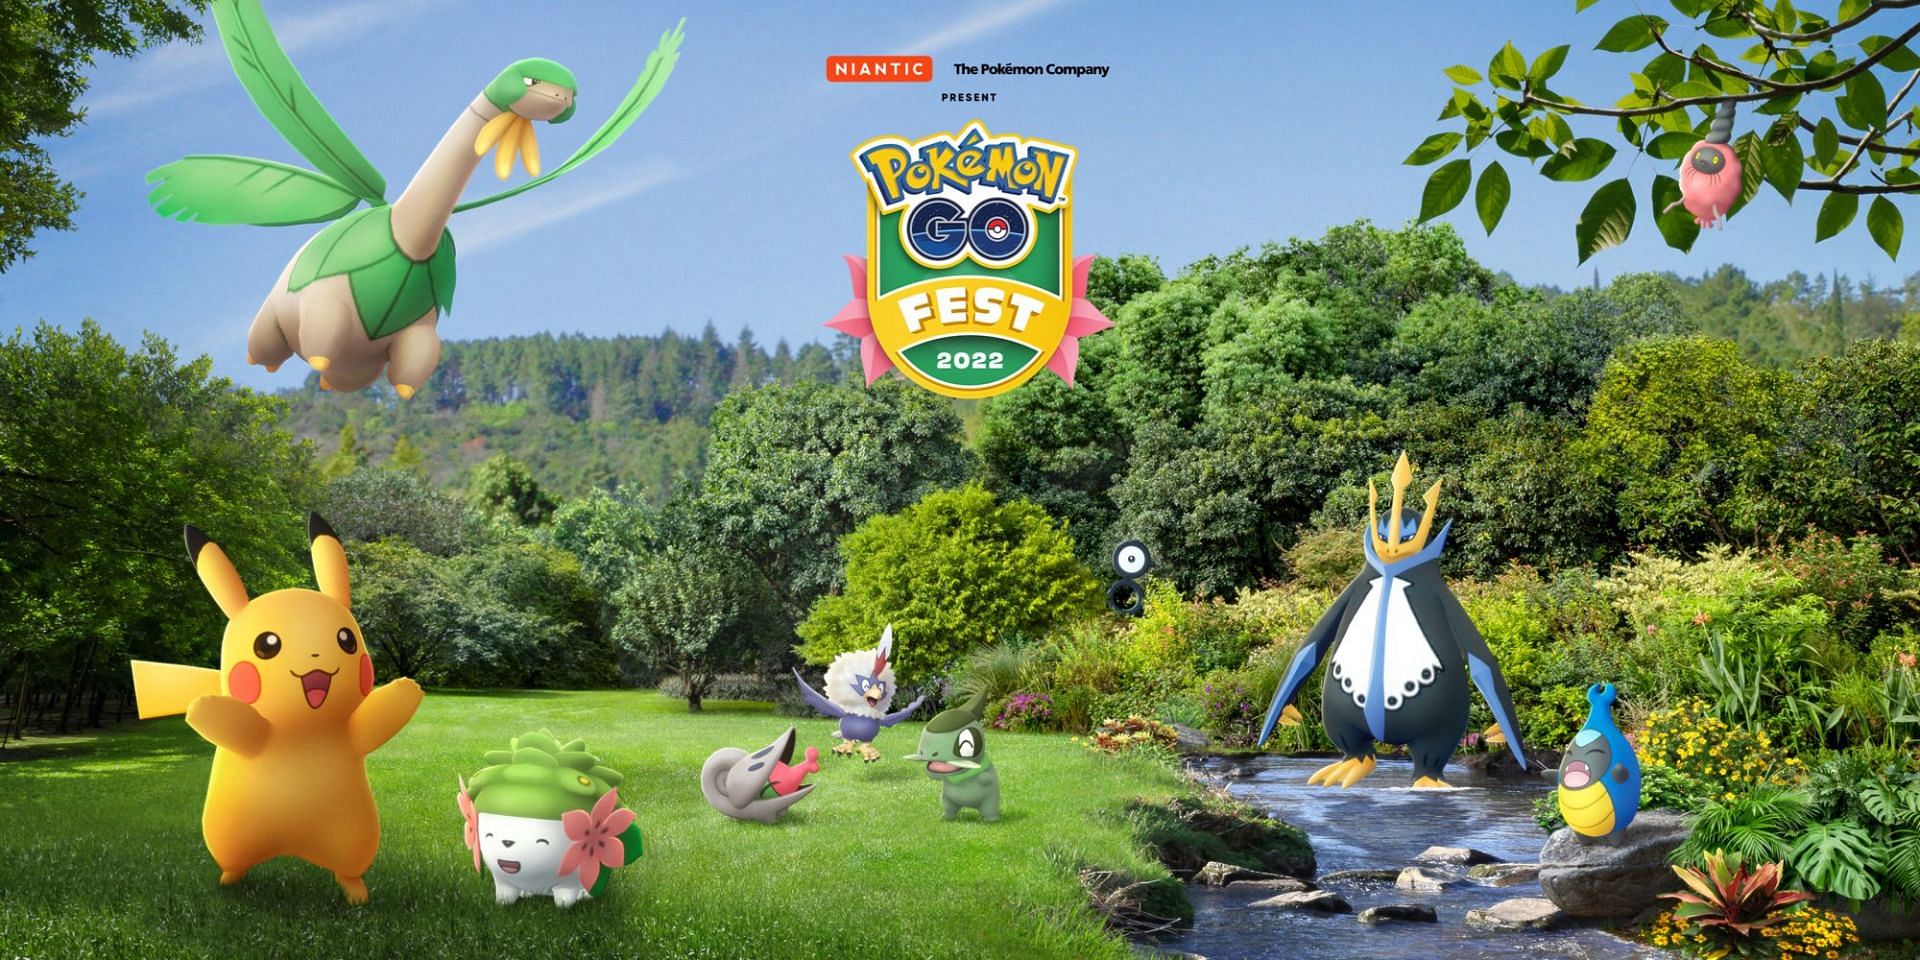 Shaymin aparece junto a Pikachu, Tropius, Axew y más en la imagen promocional del GO Fest 2022 (Imagen a través de Niantic)